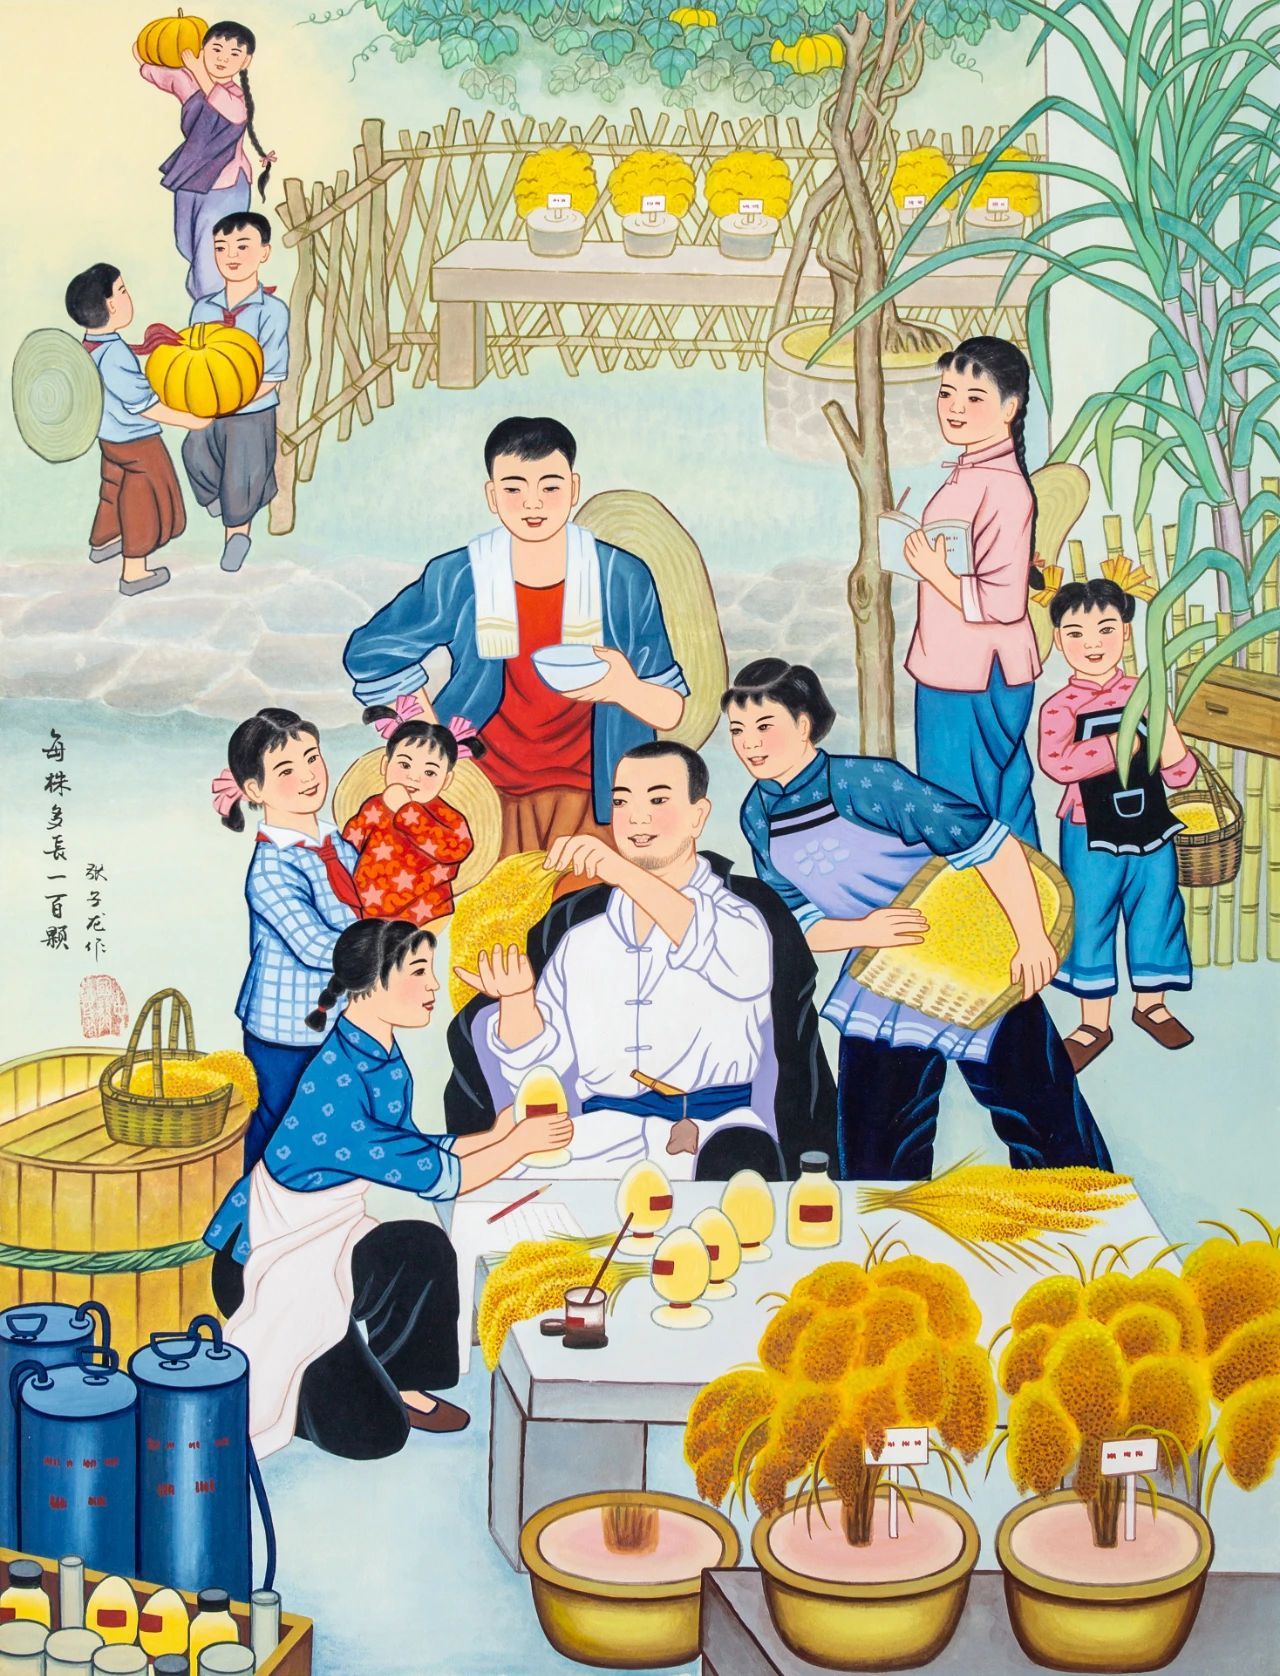 【头条报道】中国农民画：描绘伟大时代的壮丽图景_创作